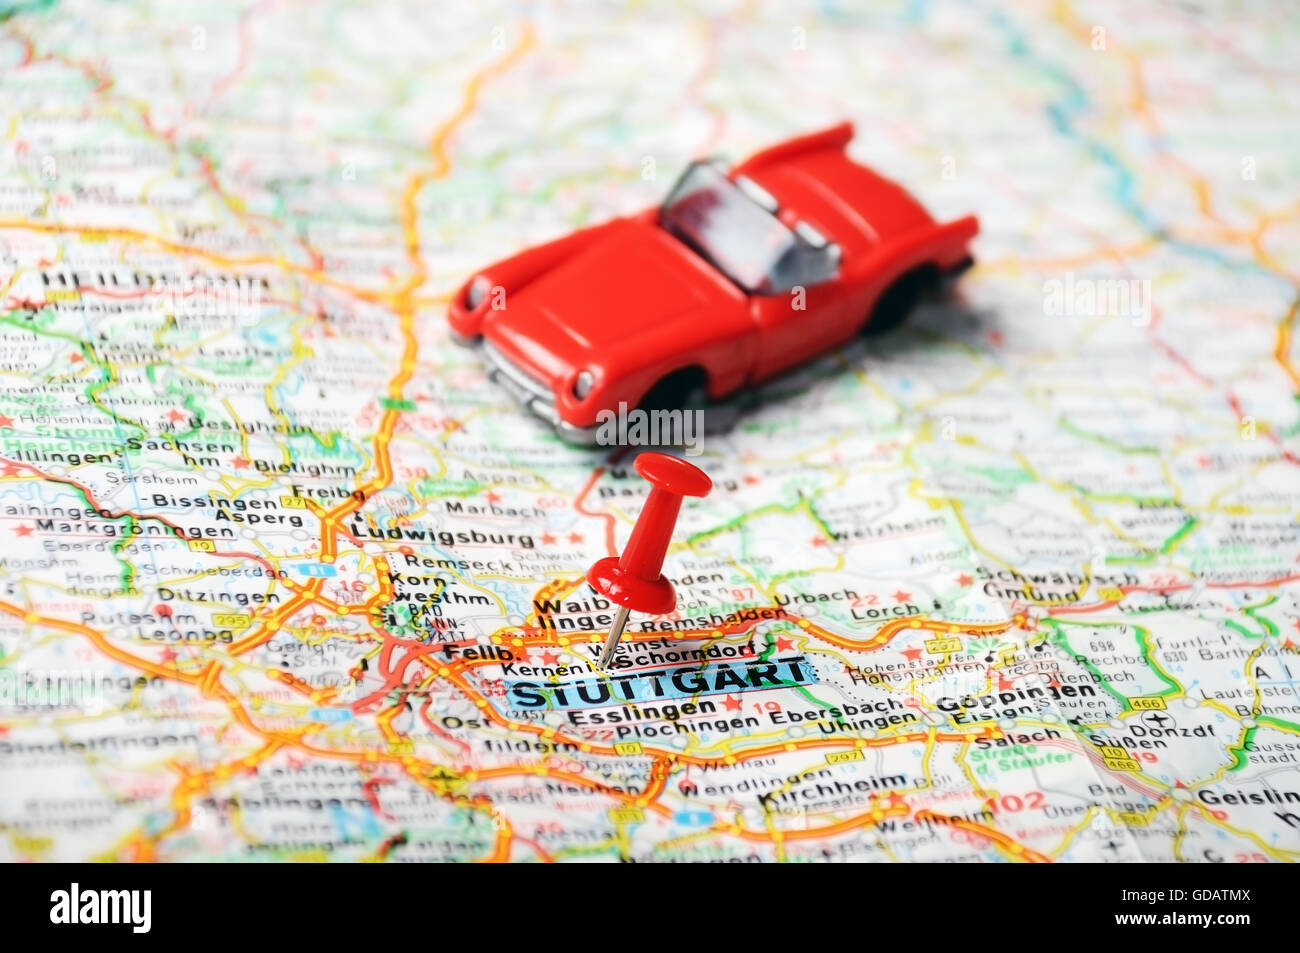 Cerca de Stuttgart mapa con clavijas roja y un coche - concepto de viaje Foto de stock